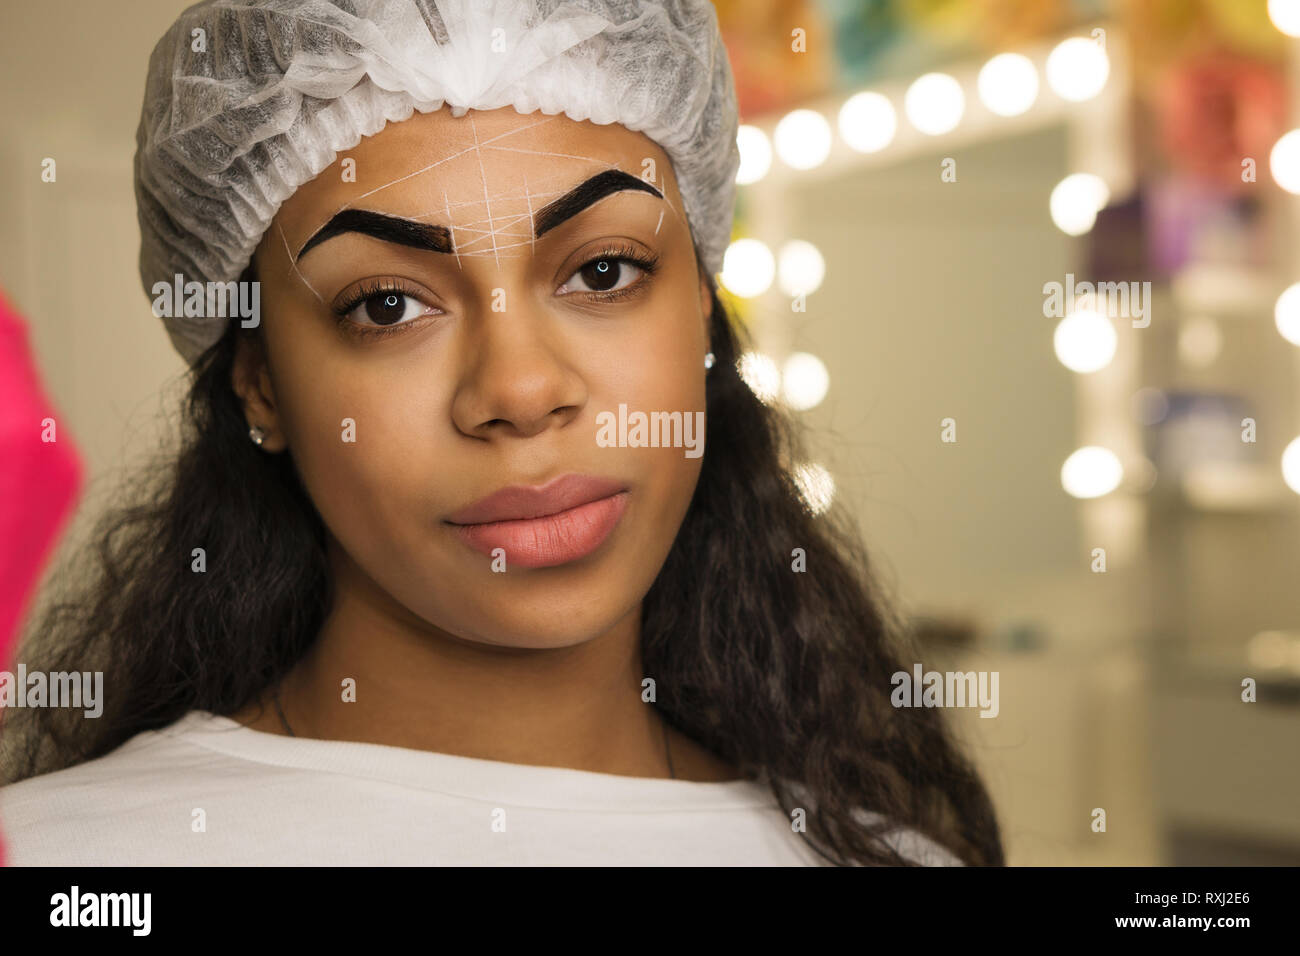 Bellezza procedura per la correzione della forma delle sopracciglia in spa salone. Faccia di razza mista donna con il markup di perfetta forma delle sopracciglia. Foto Stock